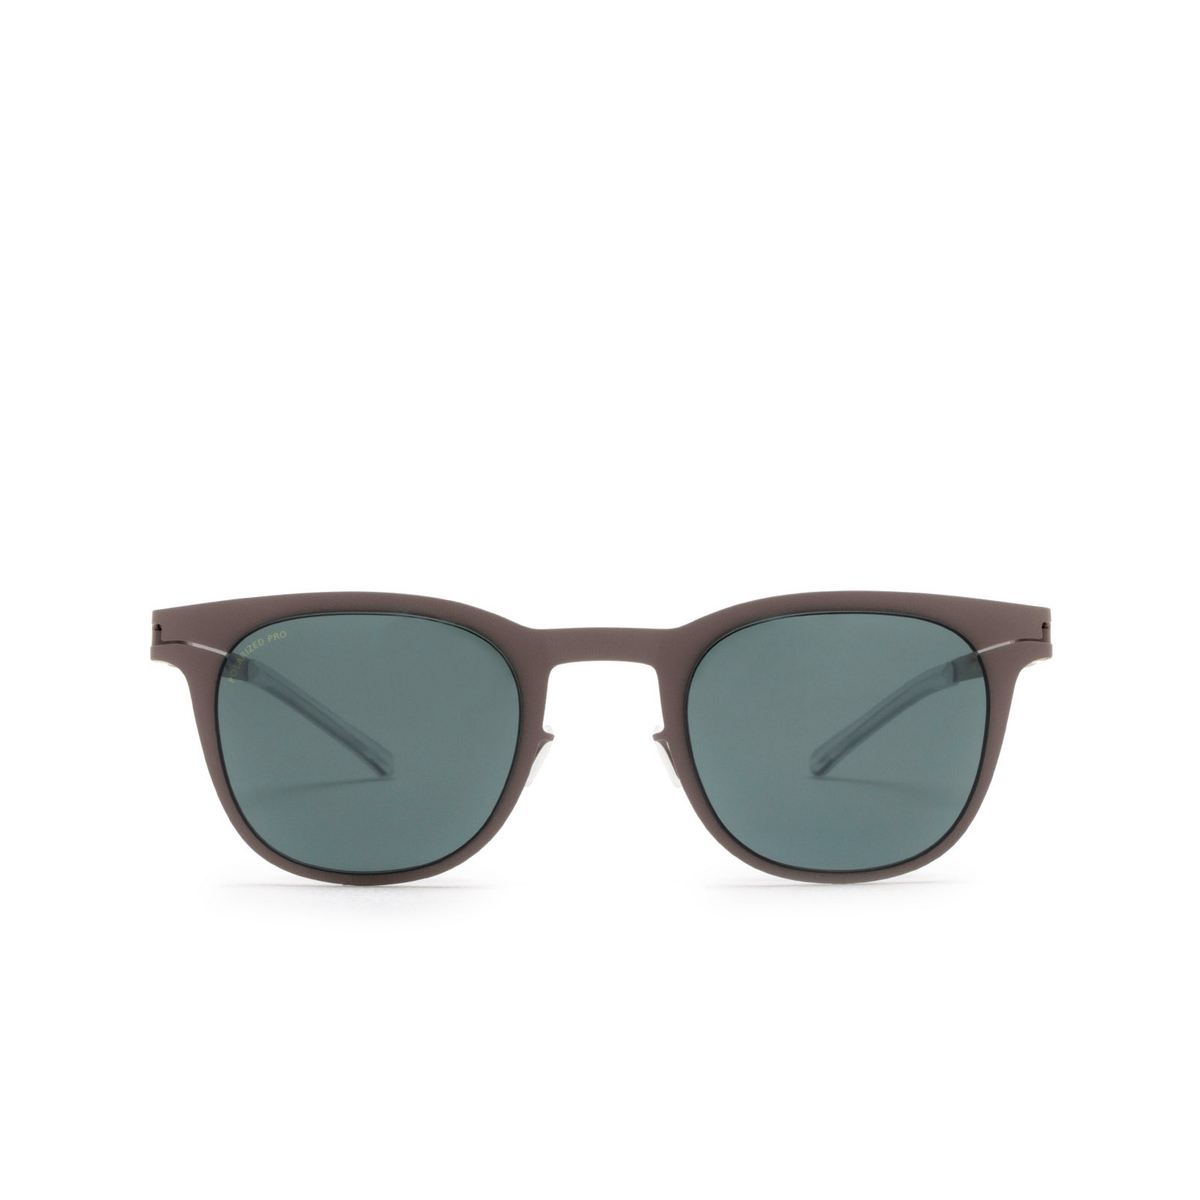 Mykita® Square Sunglasses: Callum color 223 Mole Grey - front view